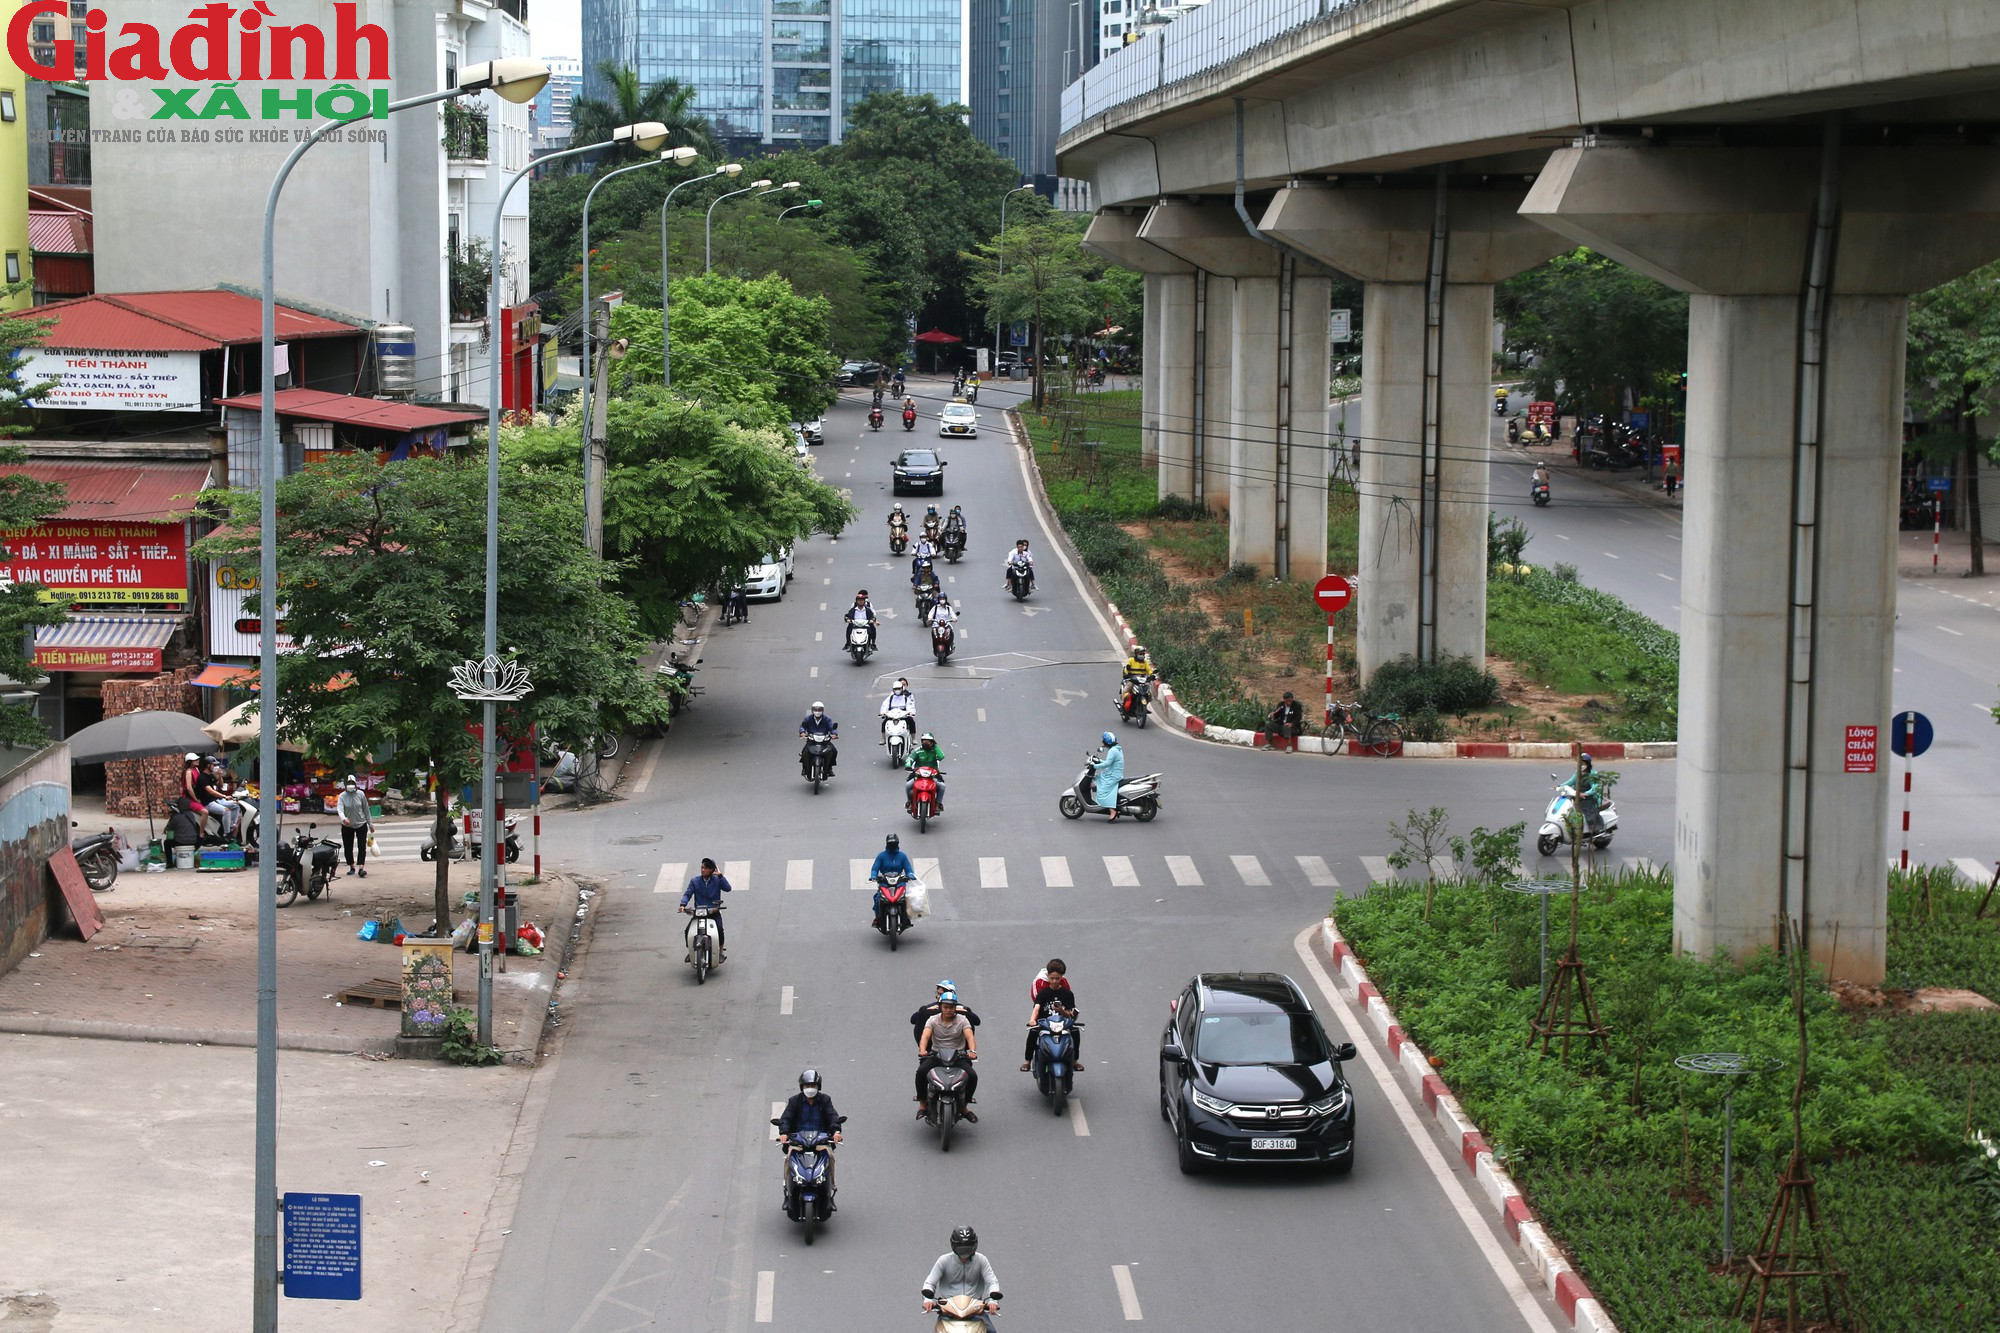 Cận cảnh 3 địa điểm dự kiến trở thành phố đi bộ, ẩm thực mới ở Hà Nội - Ảnh 11.